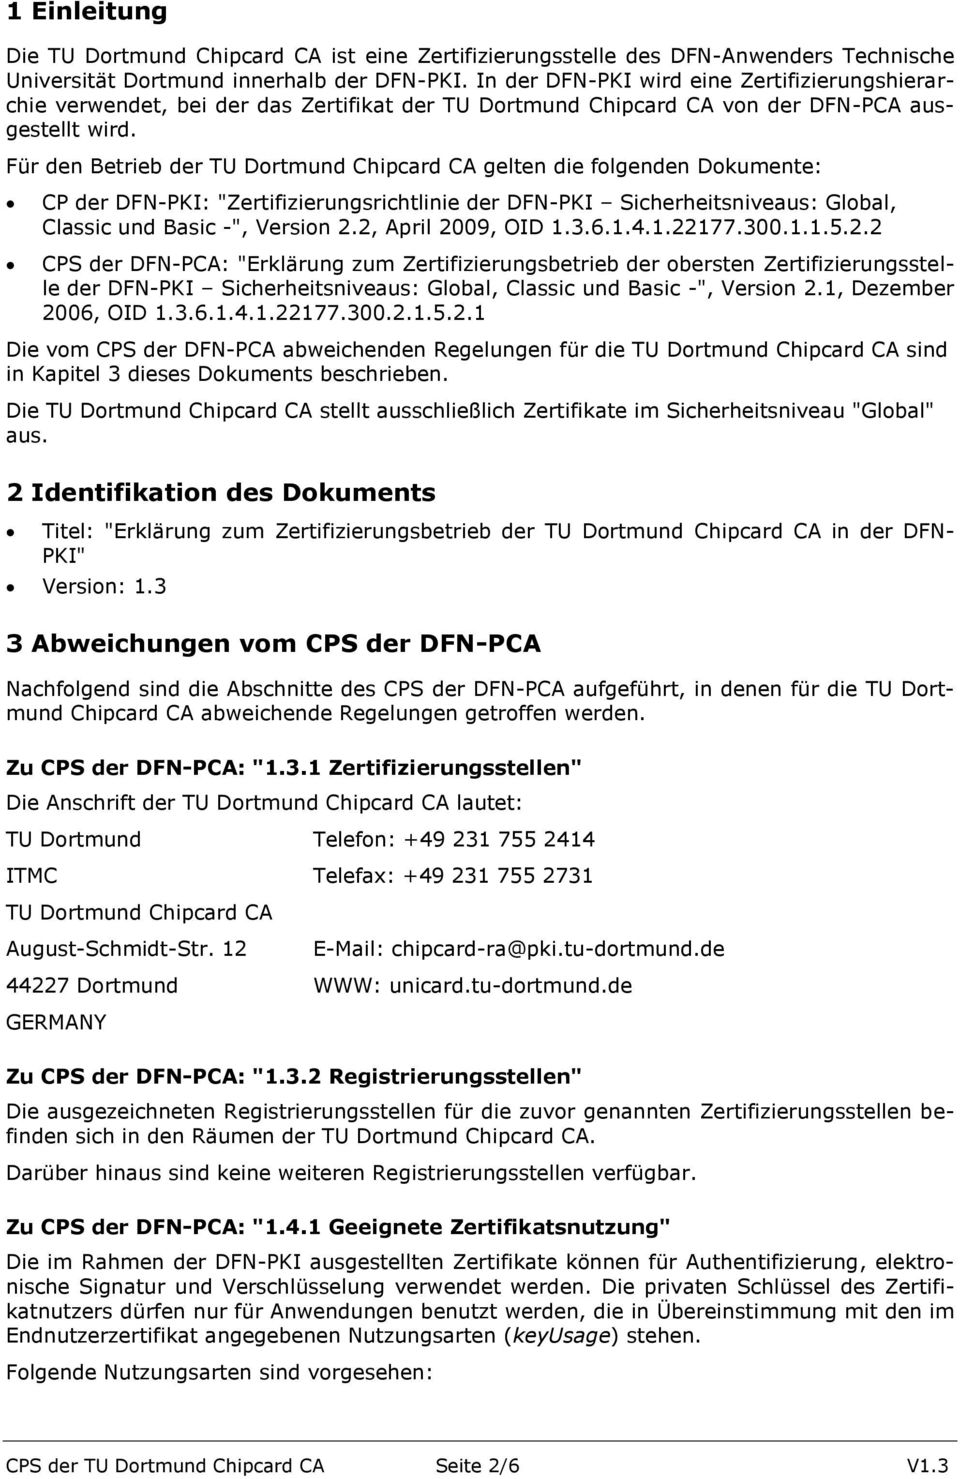 Für den Betrieb der TU Dortmund Chipcard CA gelten die folgenden Dokumente: CP der DFN-PKI: "Zertifizierungsrichtlinie der DFN-PKI Sicherheitsniveaus: Global, Classic und Basic -", Version 2.